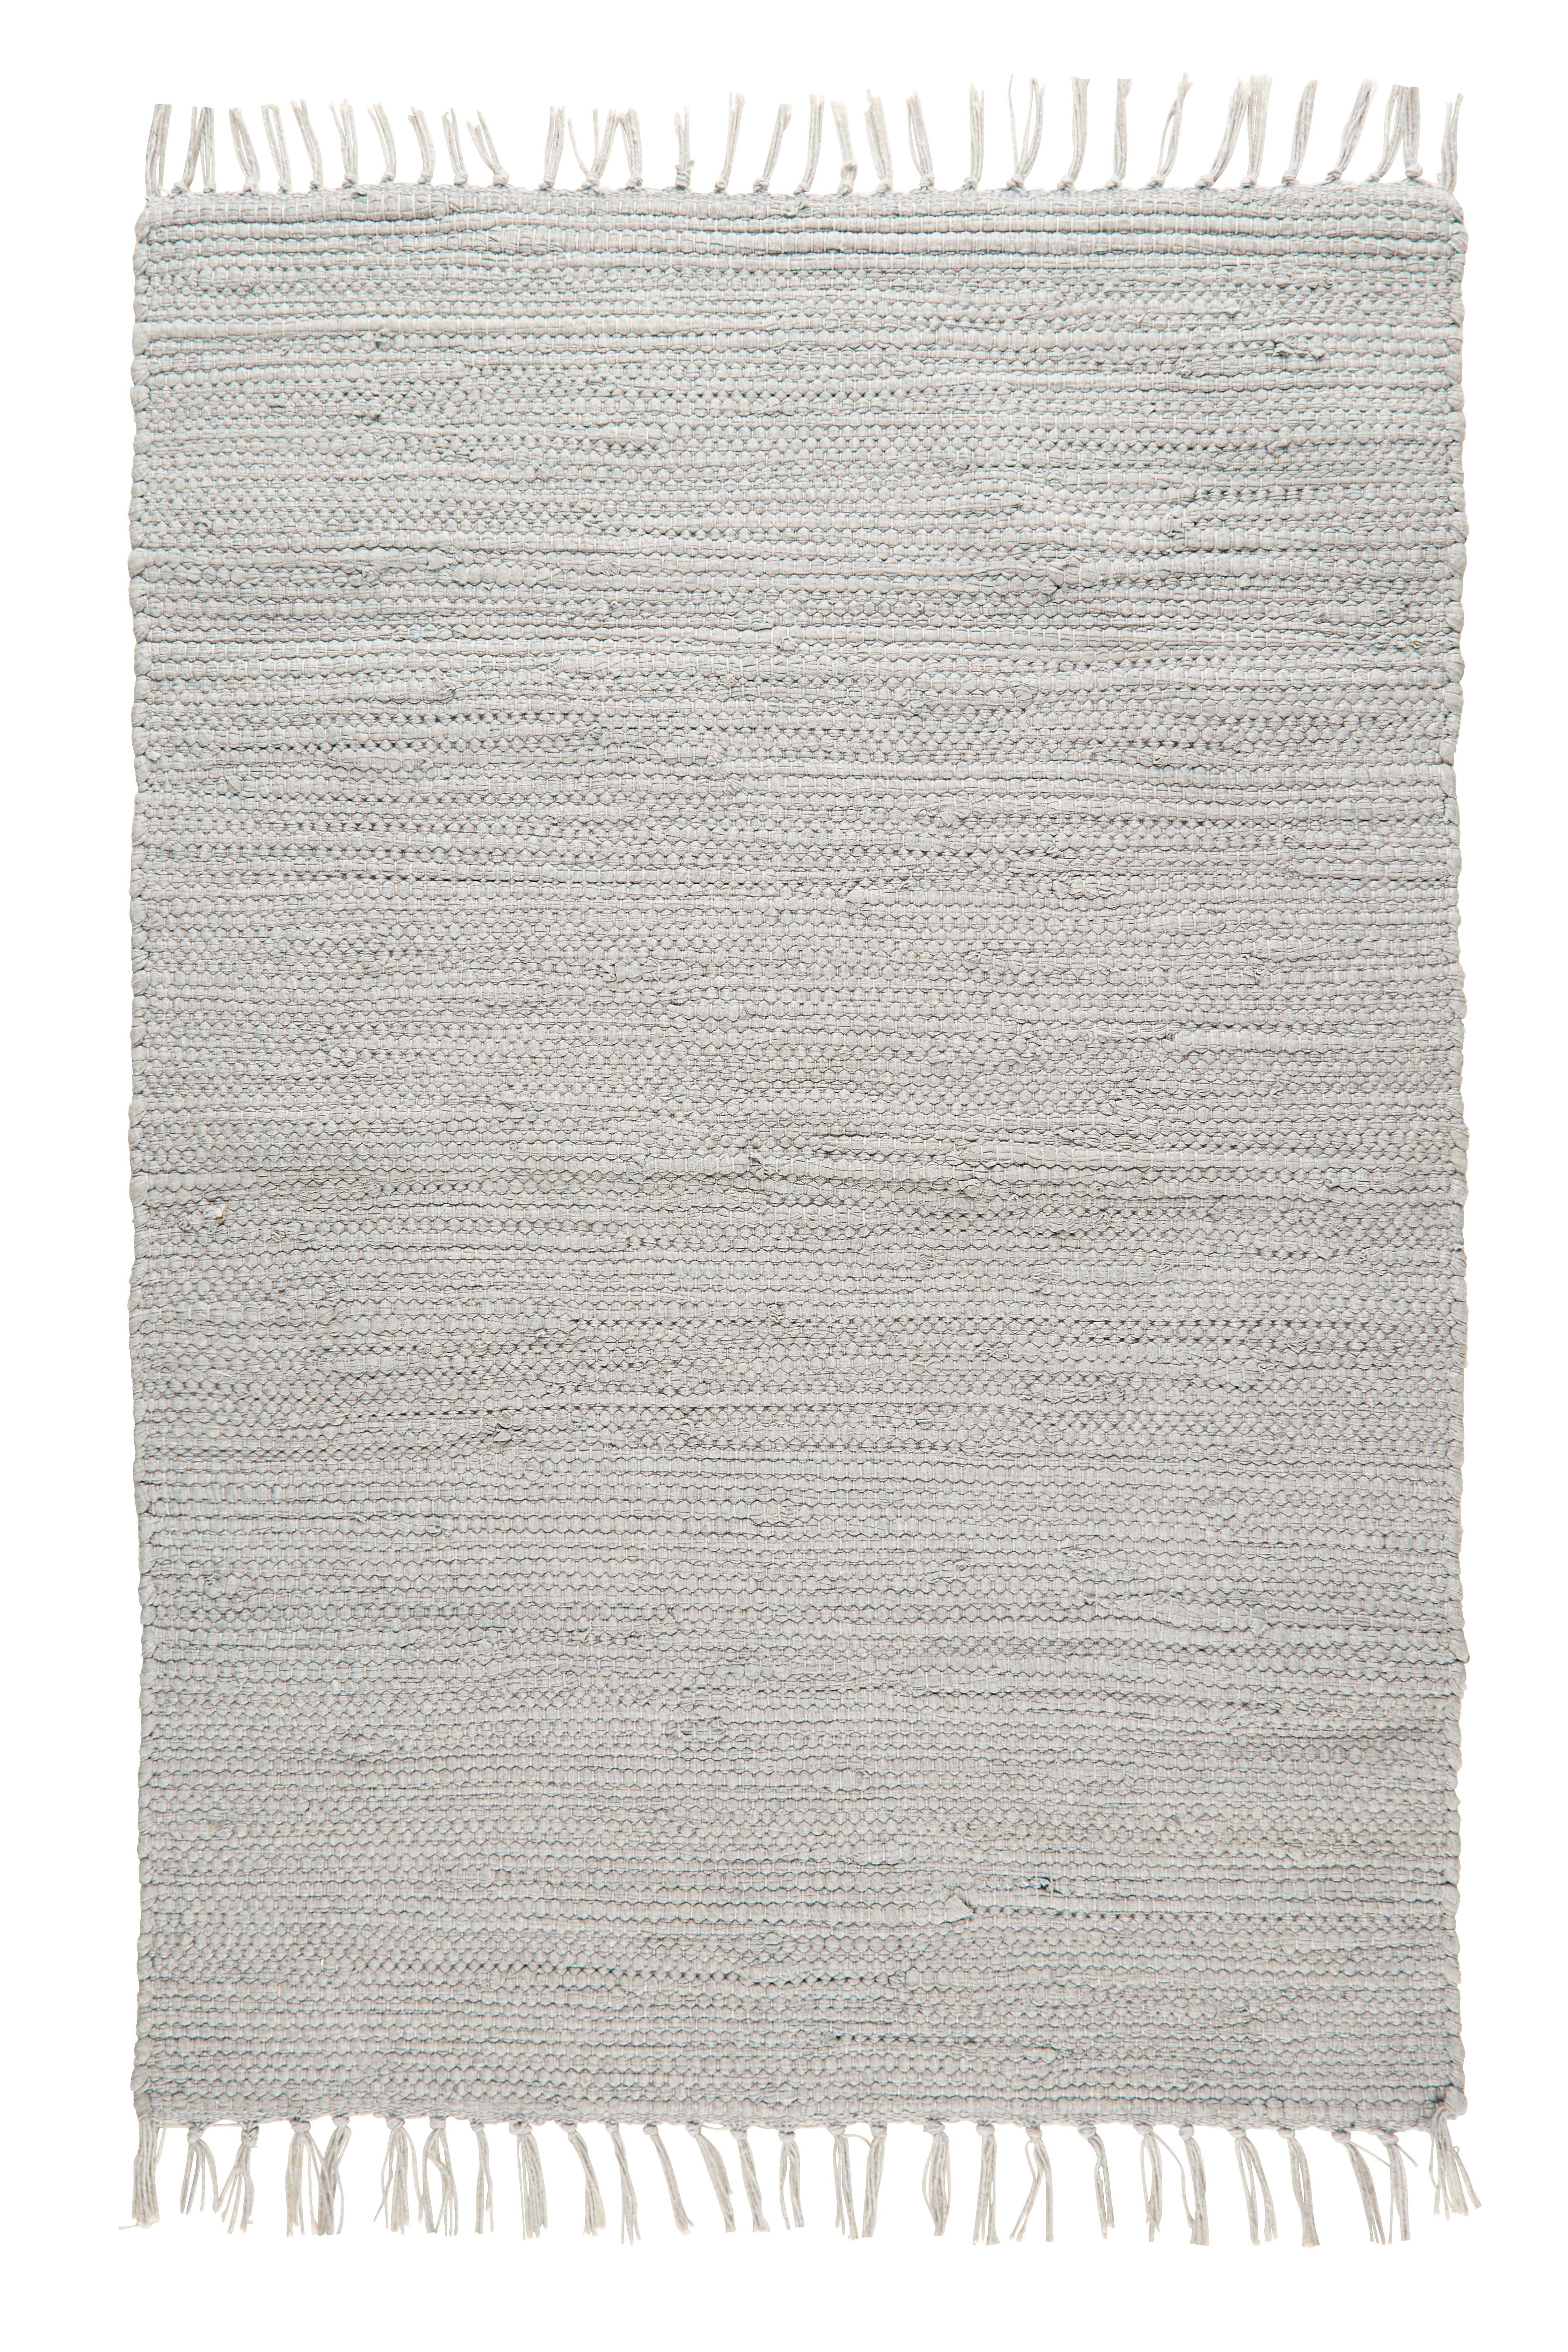 Hadrový Koberec Julia 3, 70/230cm, Šedá - šedá, Romantický / Rustikální, textil (70/230cm) - Modern Living